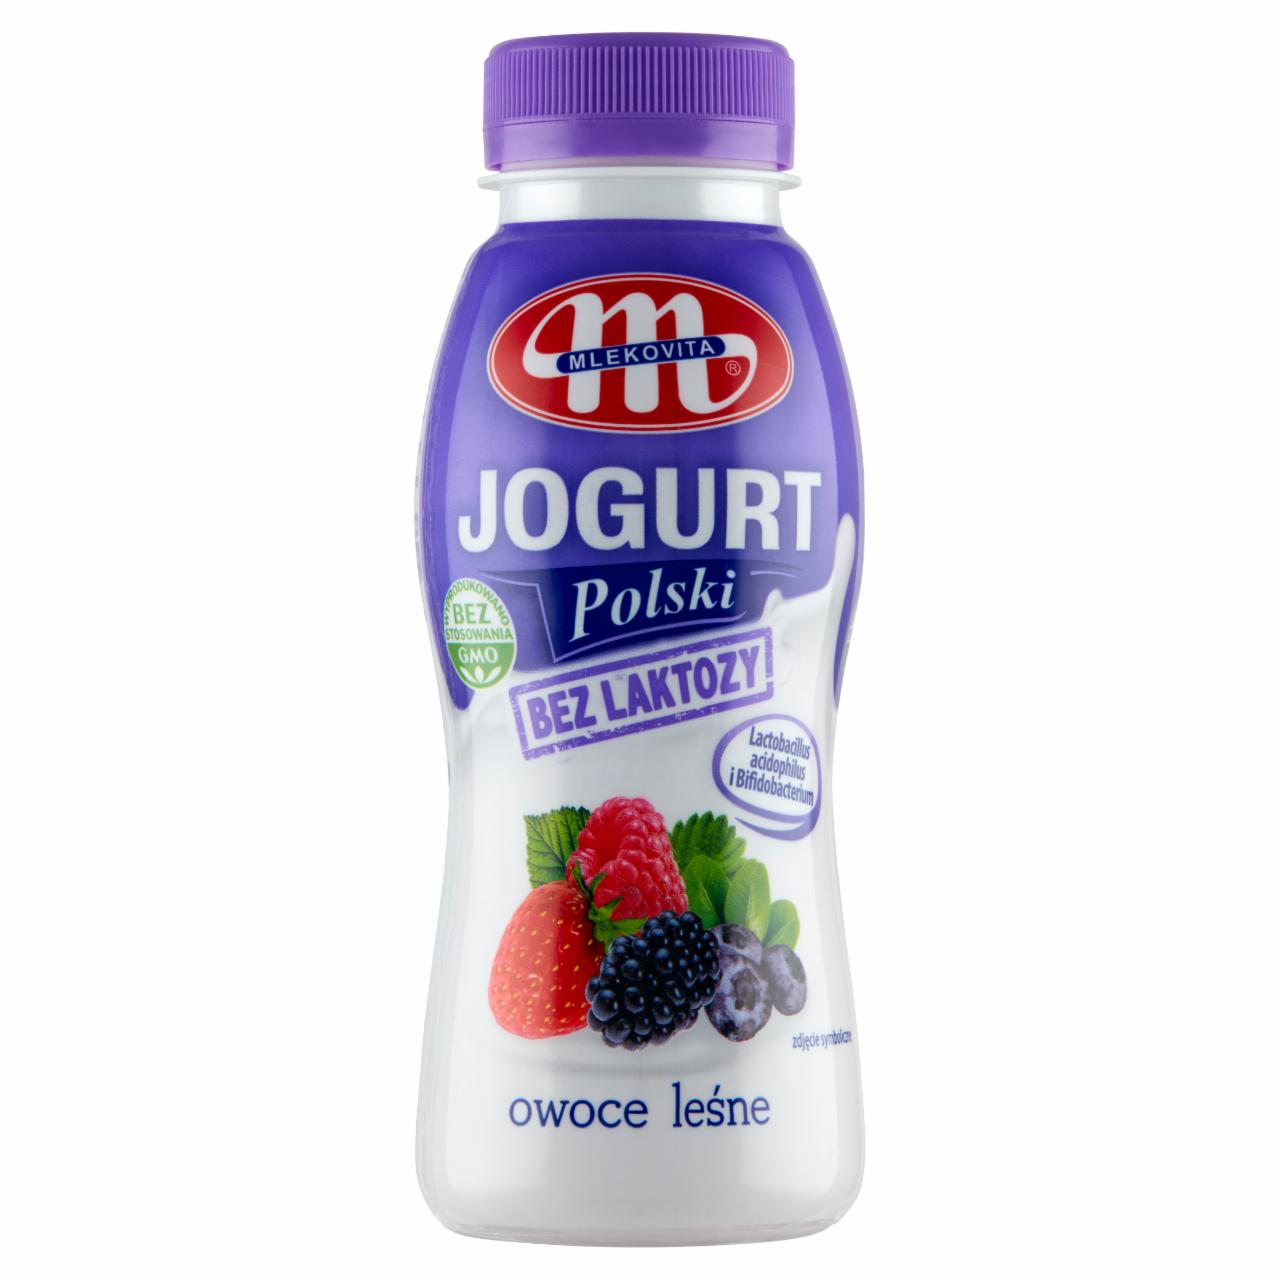 Zdjęcia - Mlekovita Jogurt Polski bez laktozy owoce leśne 250 g